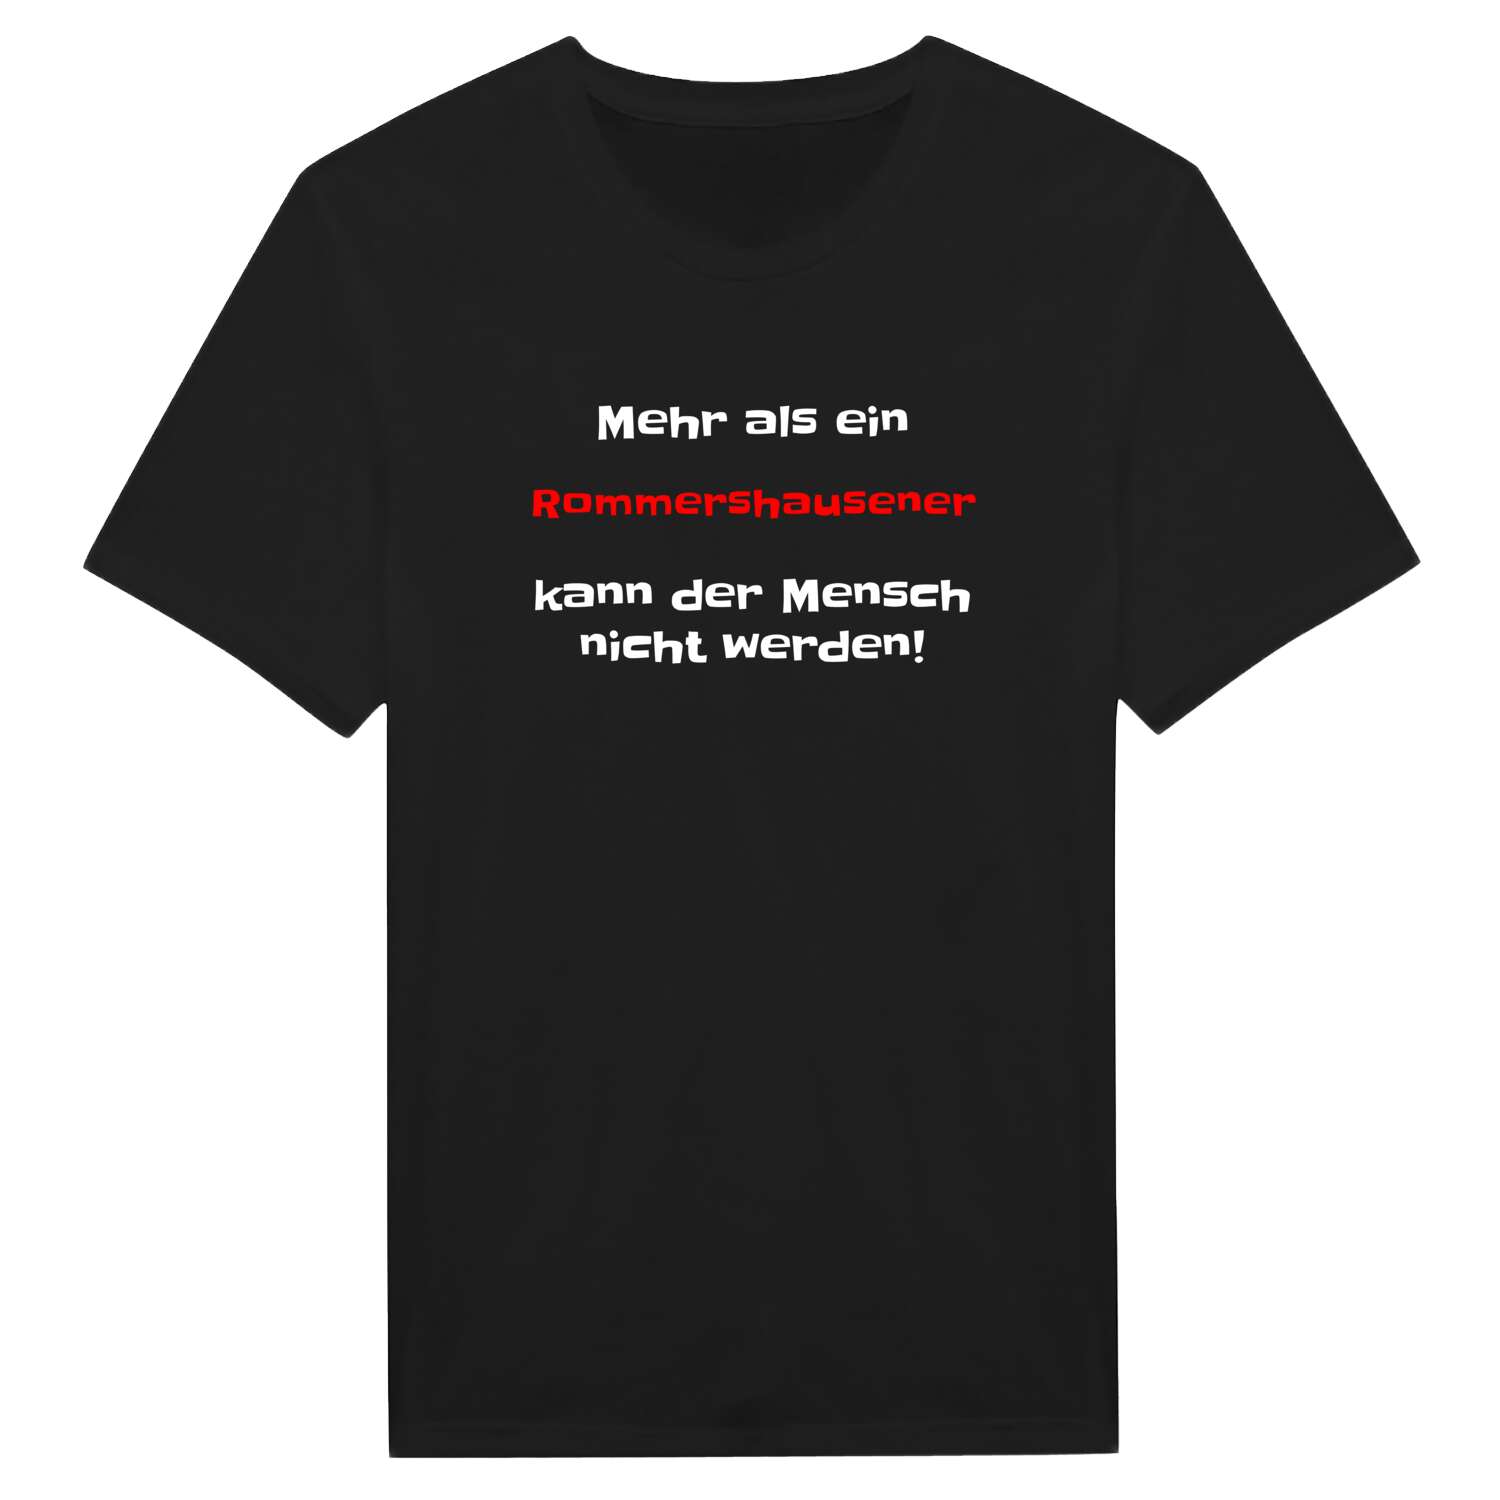 Rommershausen T-Shirt »Mehr als ein«